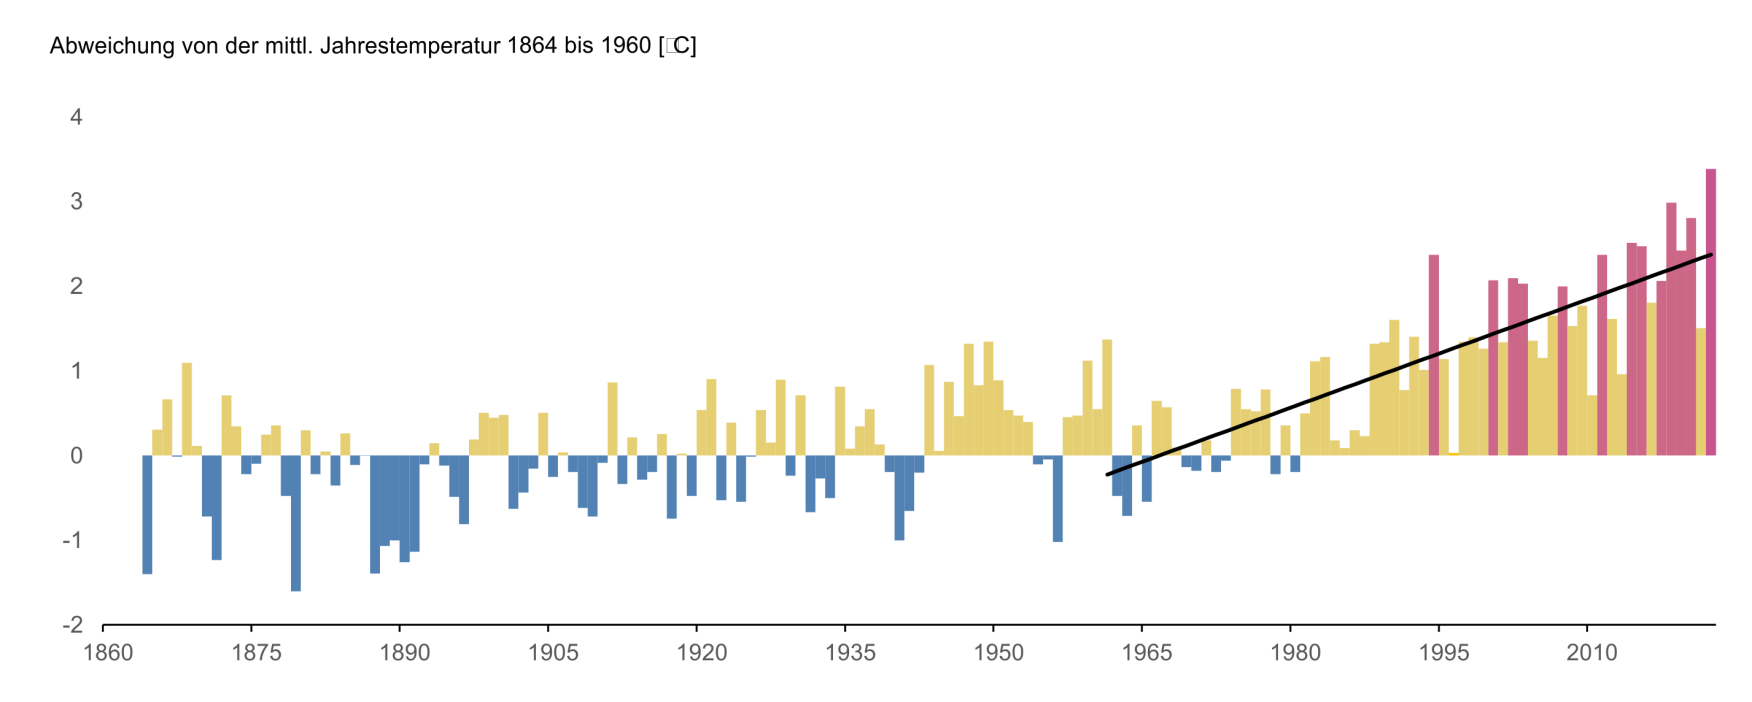 Abweichung der mittleren Jahrestemperatur vom langjährigen Mittelwert 1864–1960